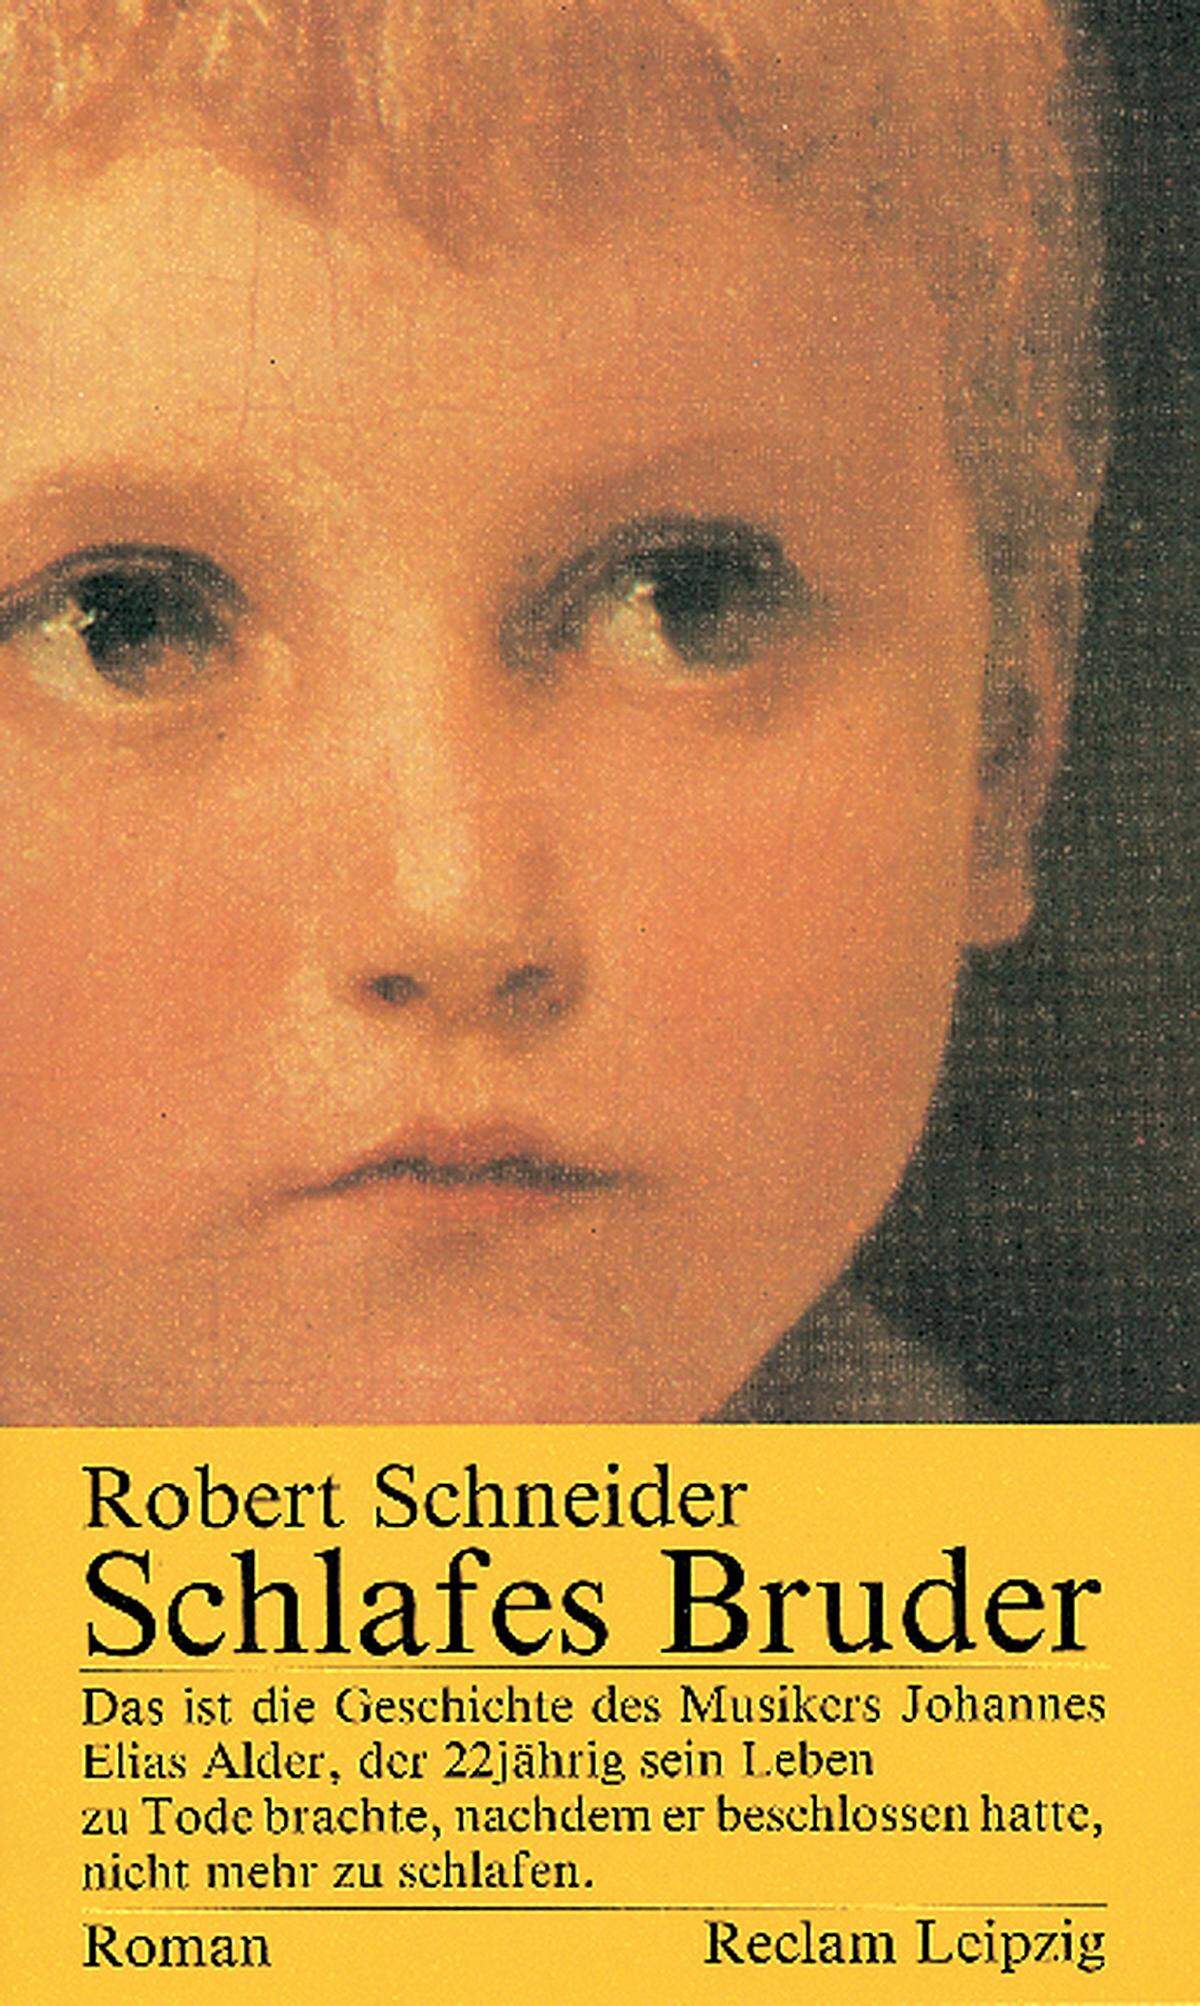 "Das ist die Geschichte des Musikers Johannes Elias Alder, der zweiundzwanzigjährig sein Leben zu Tode brachte, nachdem er beschlossen hatte, nicht mehr zu schlafen."  Robert Schneider: "Schlafes Bruder", 1992